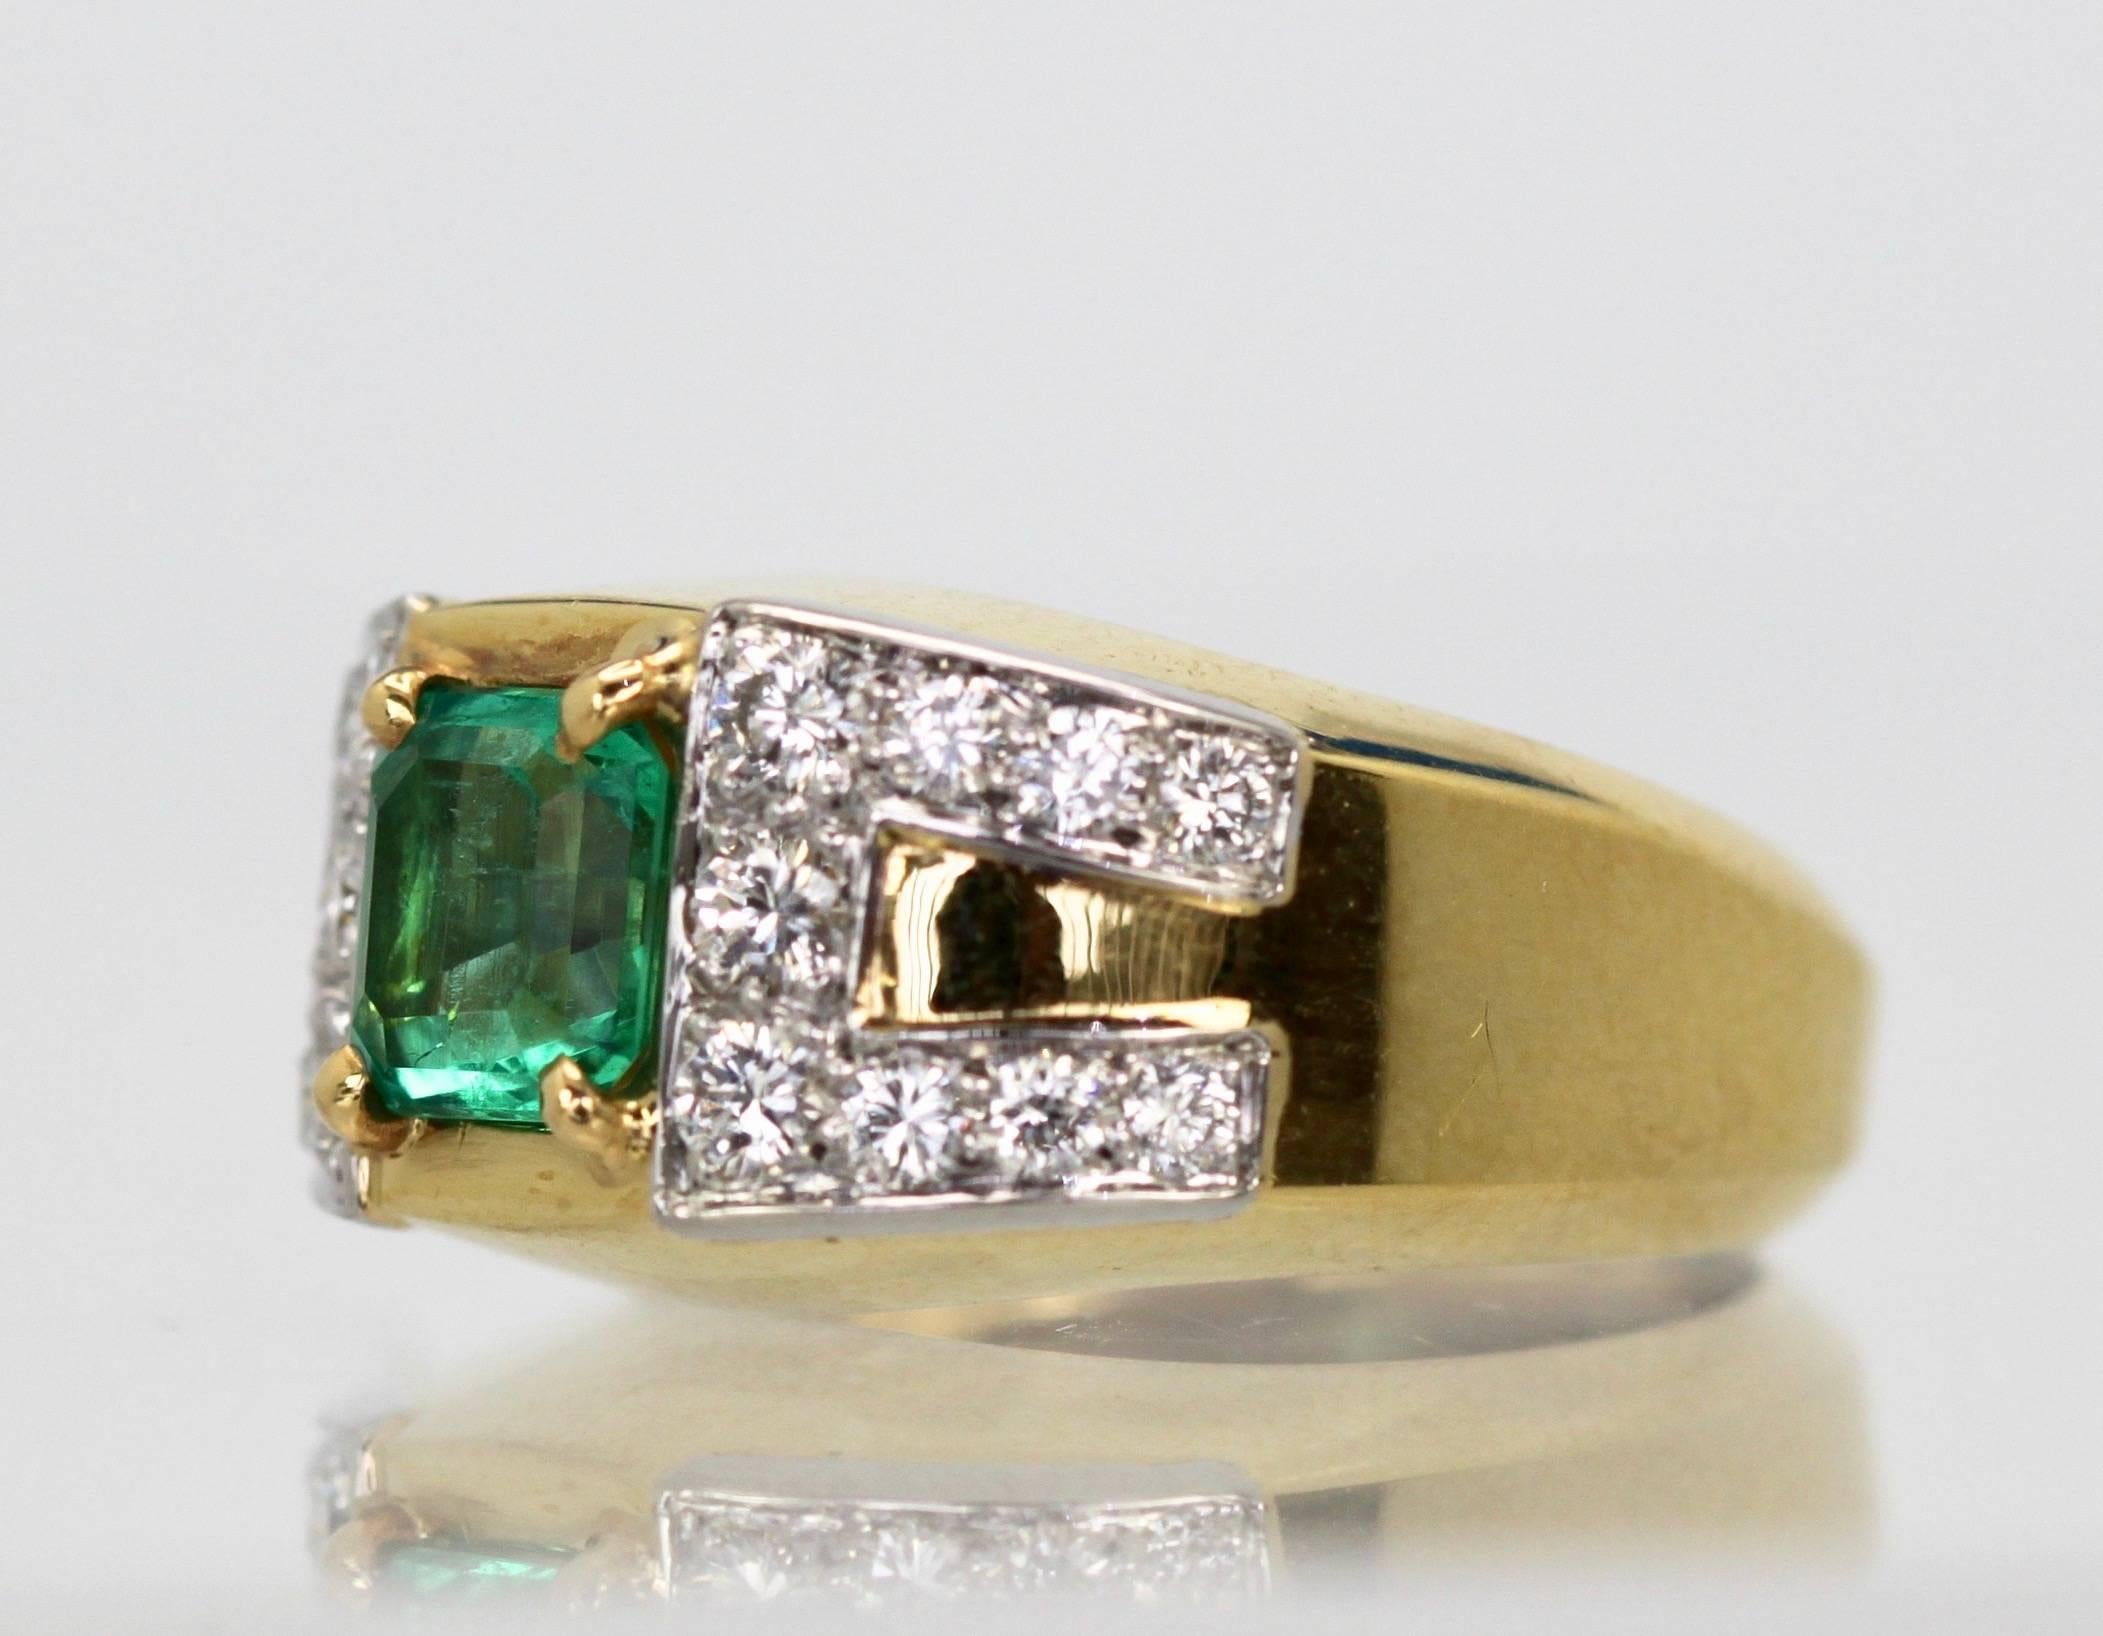 Dieser wunderschöne David Webb Smaragd- und Diamantring kommt aus Paris und ist atemberaubend. Der Ring besteht aus einem wunderschönen smaragdgrünen, quadratisch geschliffenen Stein von etwa 1,25 bis 1,50 Karat und 18 Diamanten von insgesamt etwa